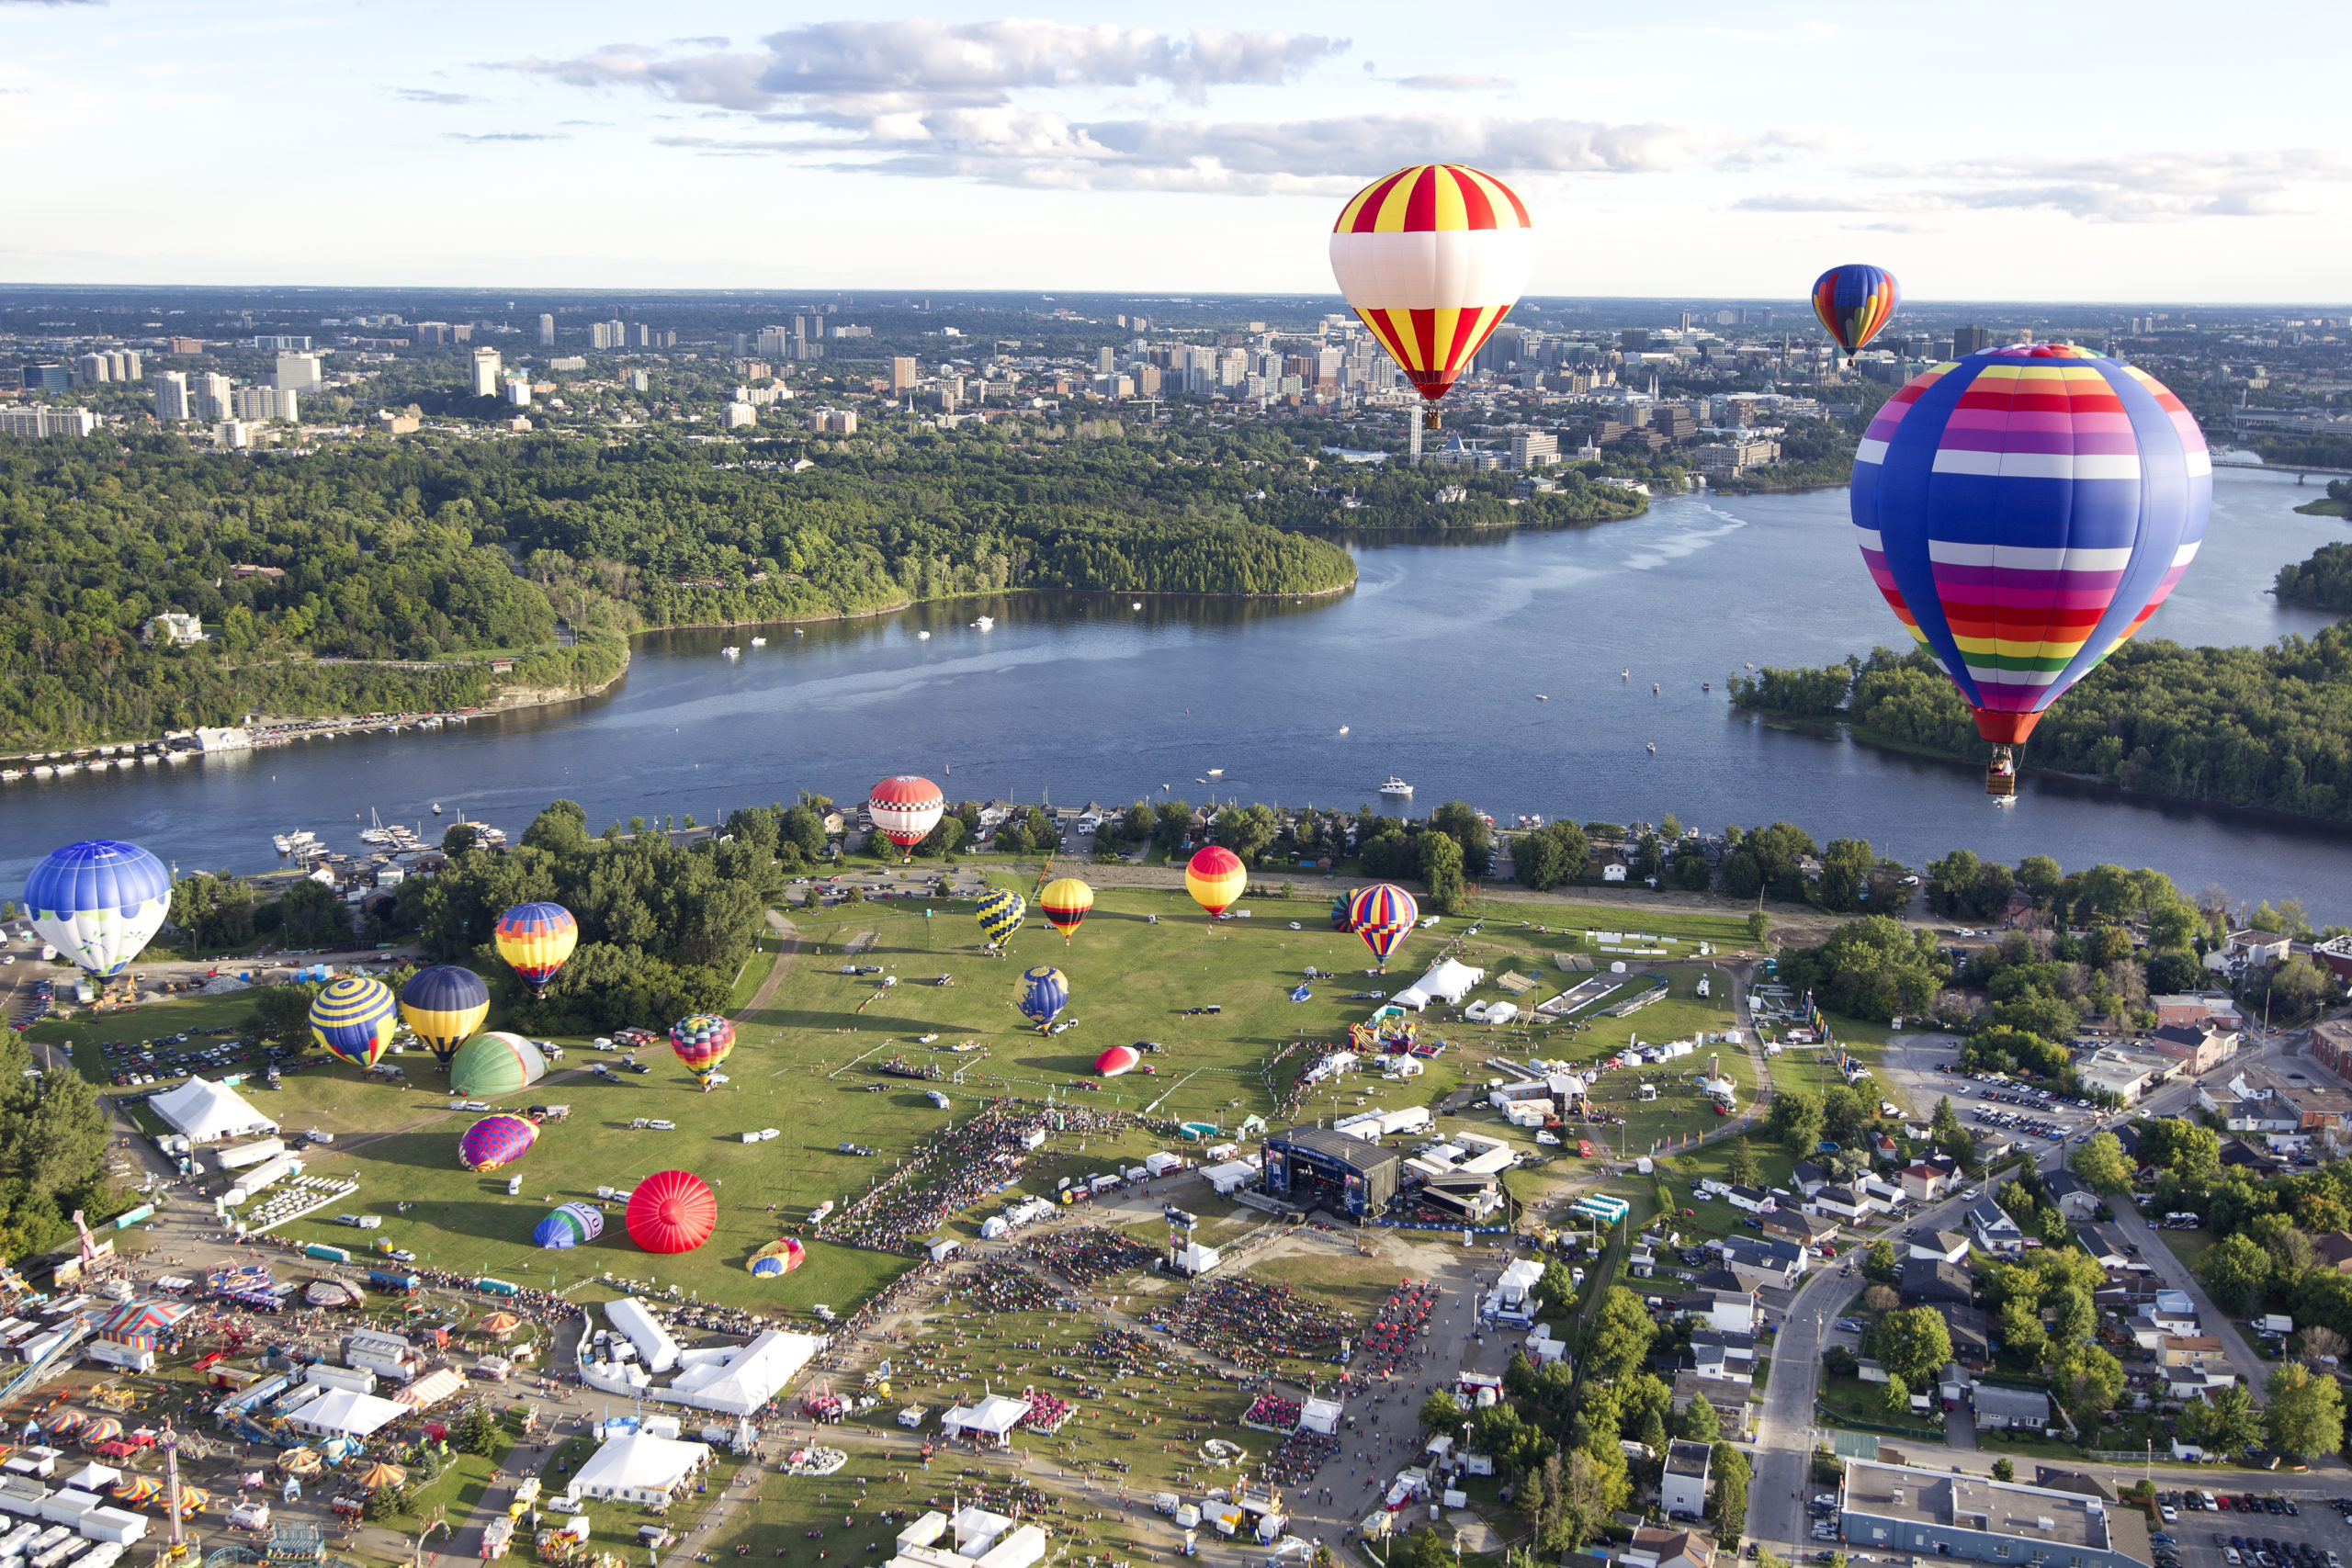  Festival de montgolfières à Gatineau – Source : Festival de montgolfières de Gatineau